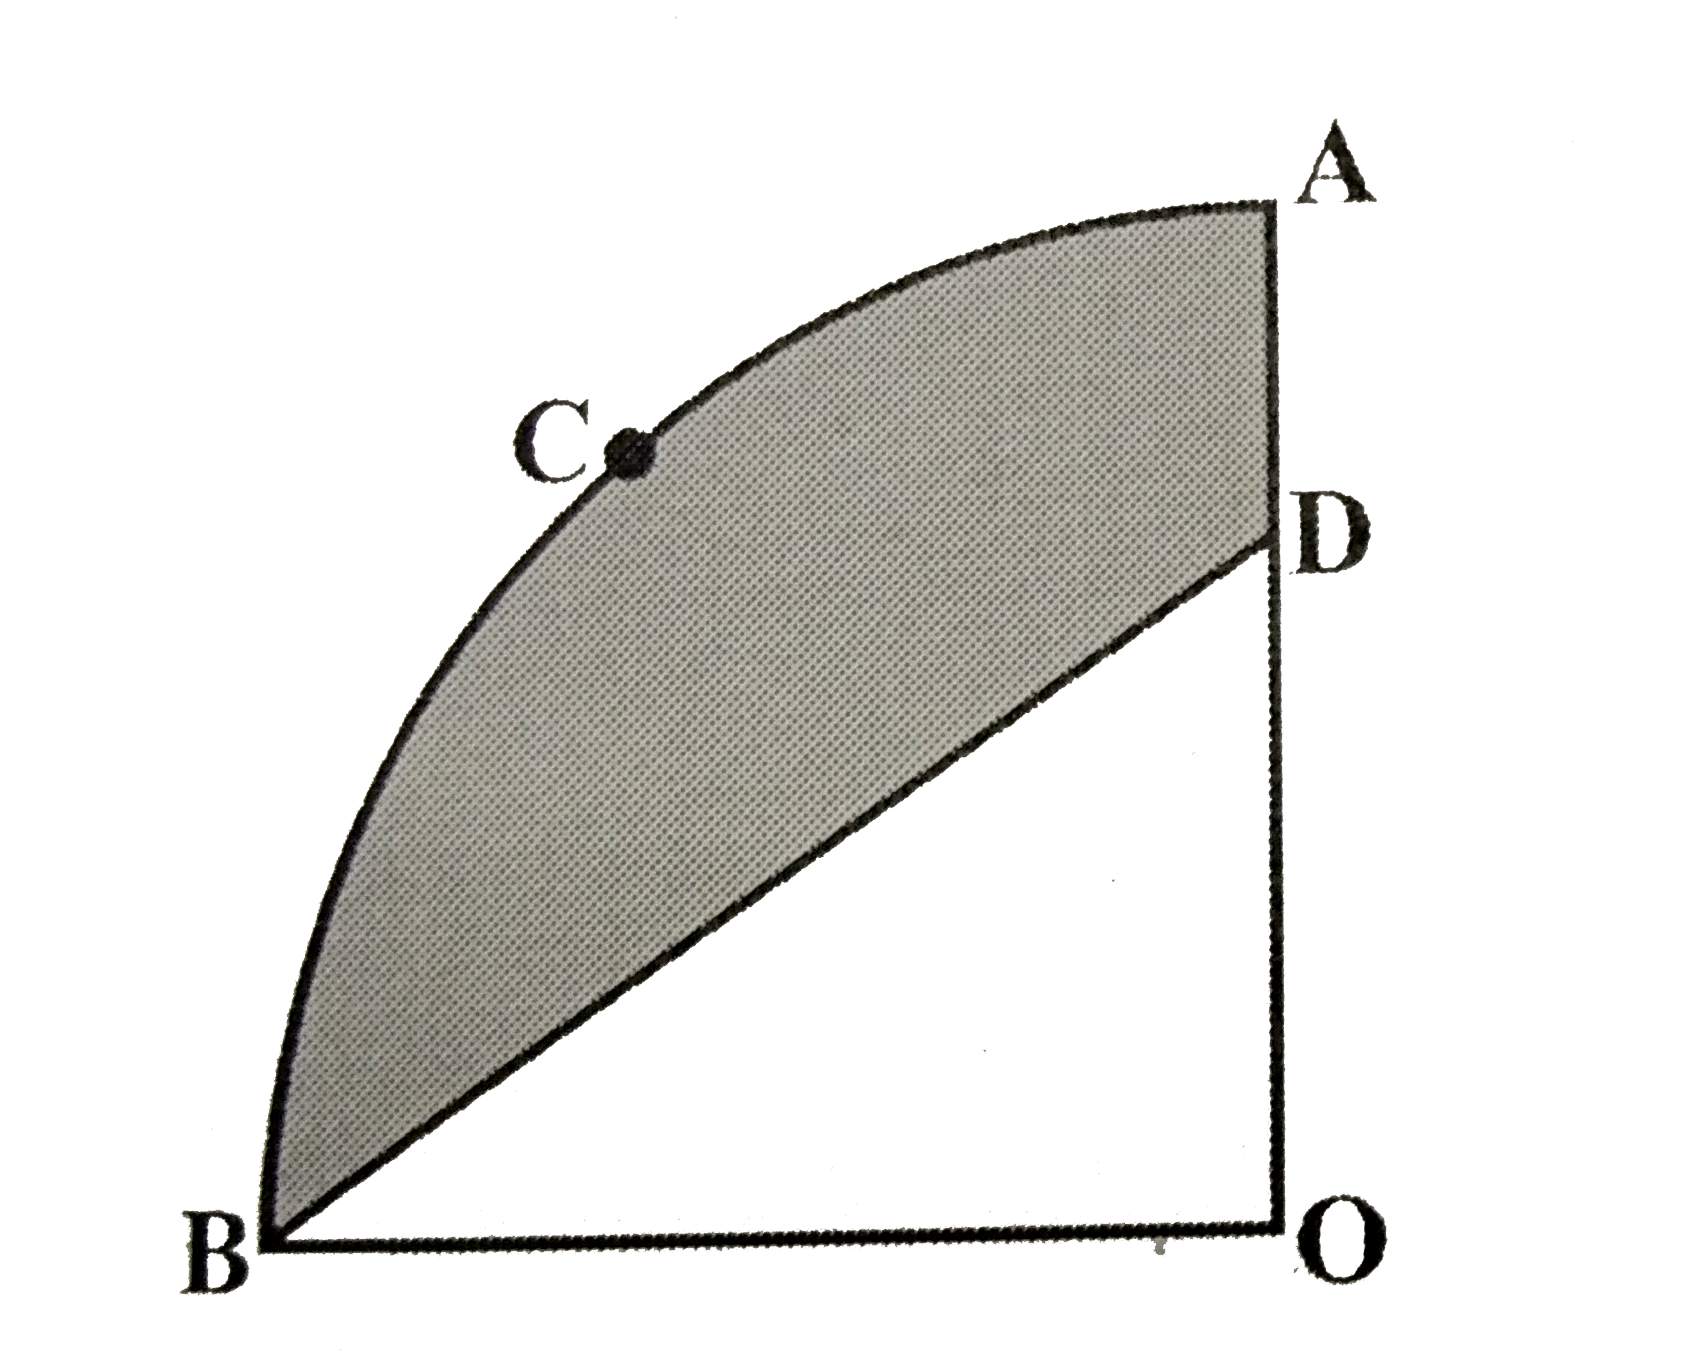 आकृति में OACB केंद्र O और 3.5 सेमी वाले एक वृत्त का चतुर्थांश है। यदि OD=2cm है तो निम्नलिखित  के क्षेत्रफल ज्ञात कीजिए।  (i) चतुर्थांश OACB   (ii) छायांकित भाग